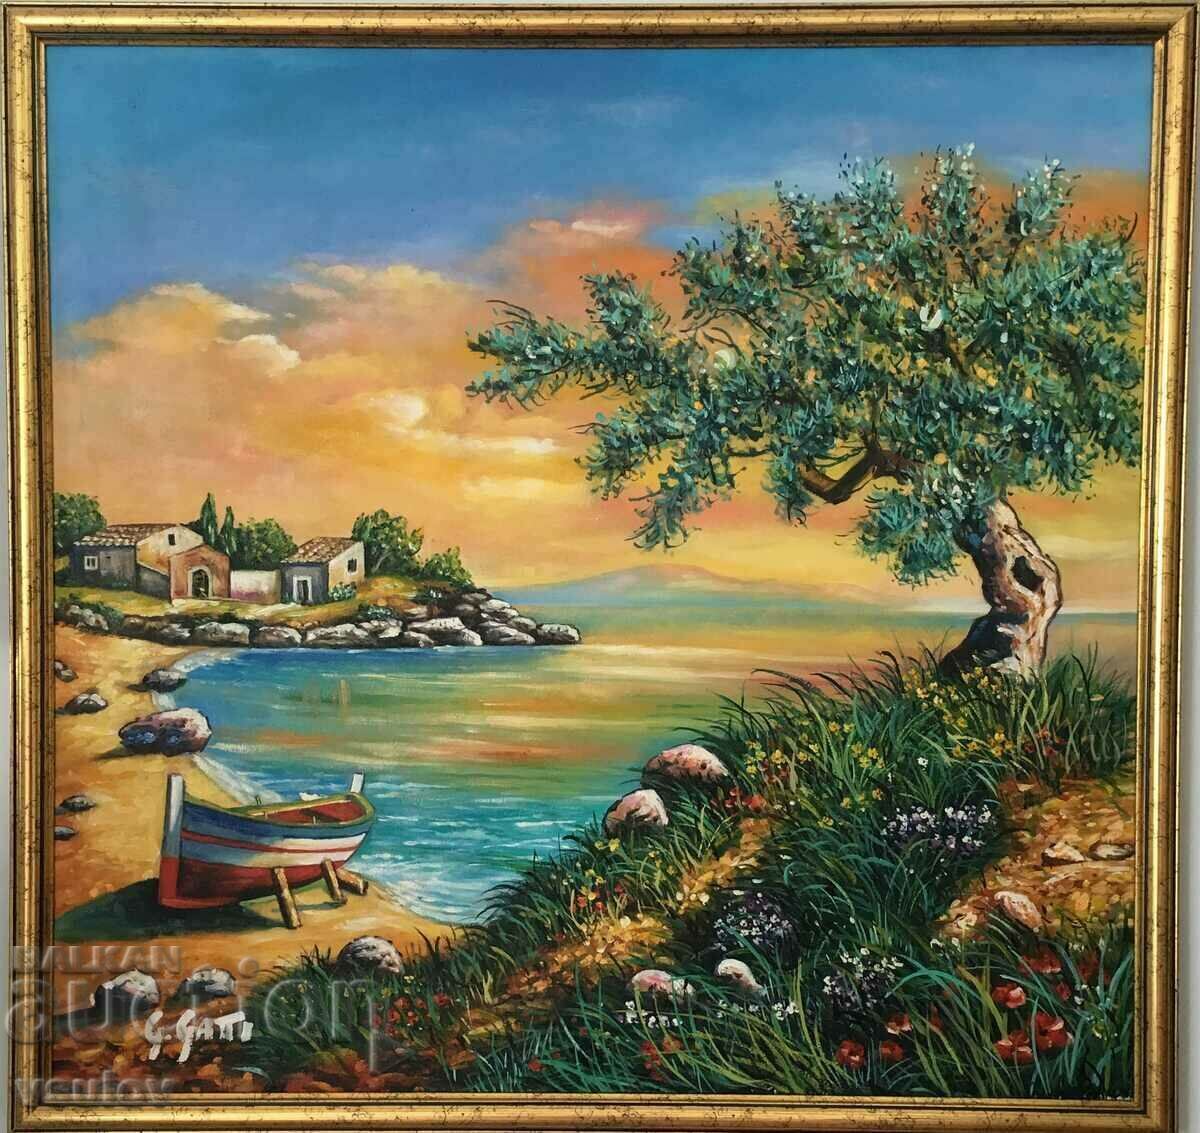 Peisaj italian, mare, pictură în ulei pe pânză